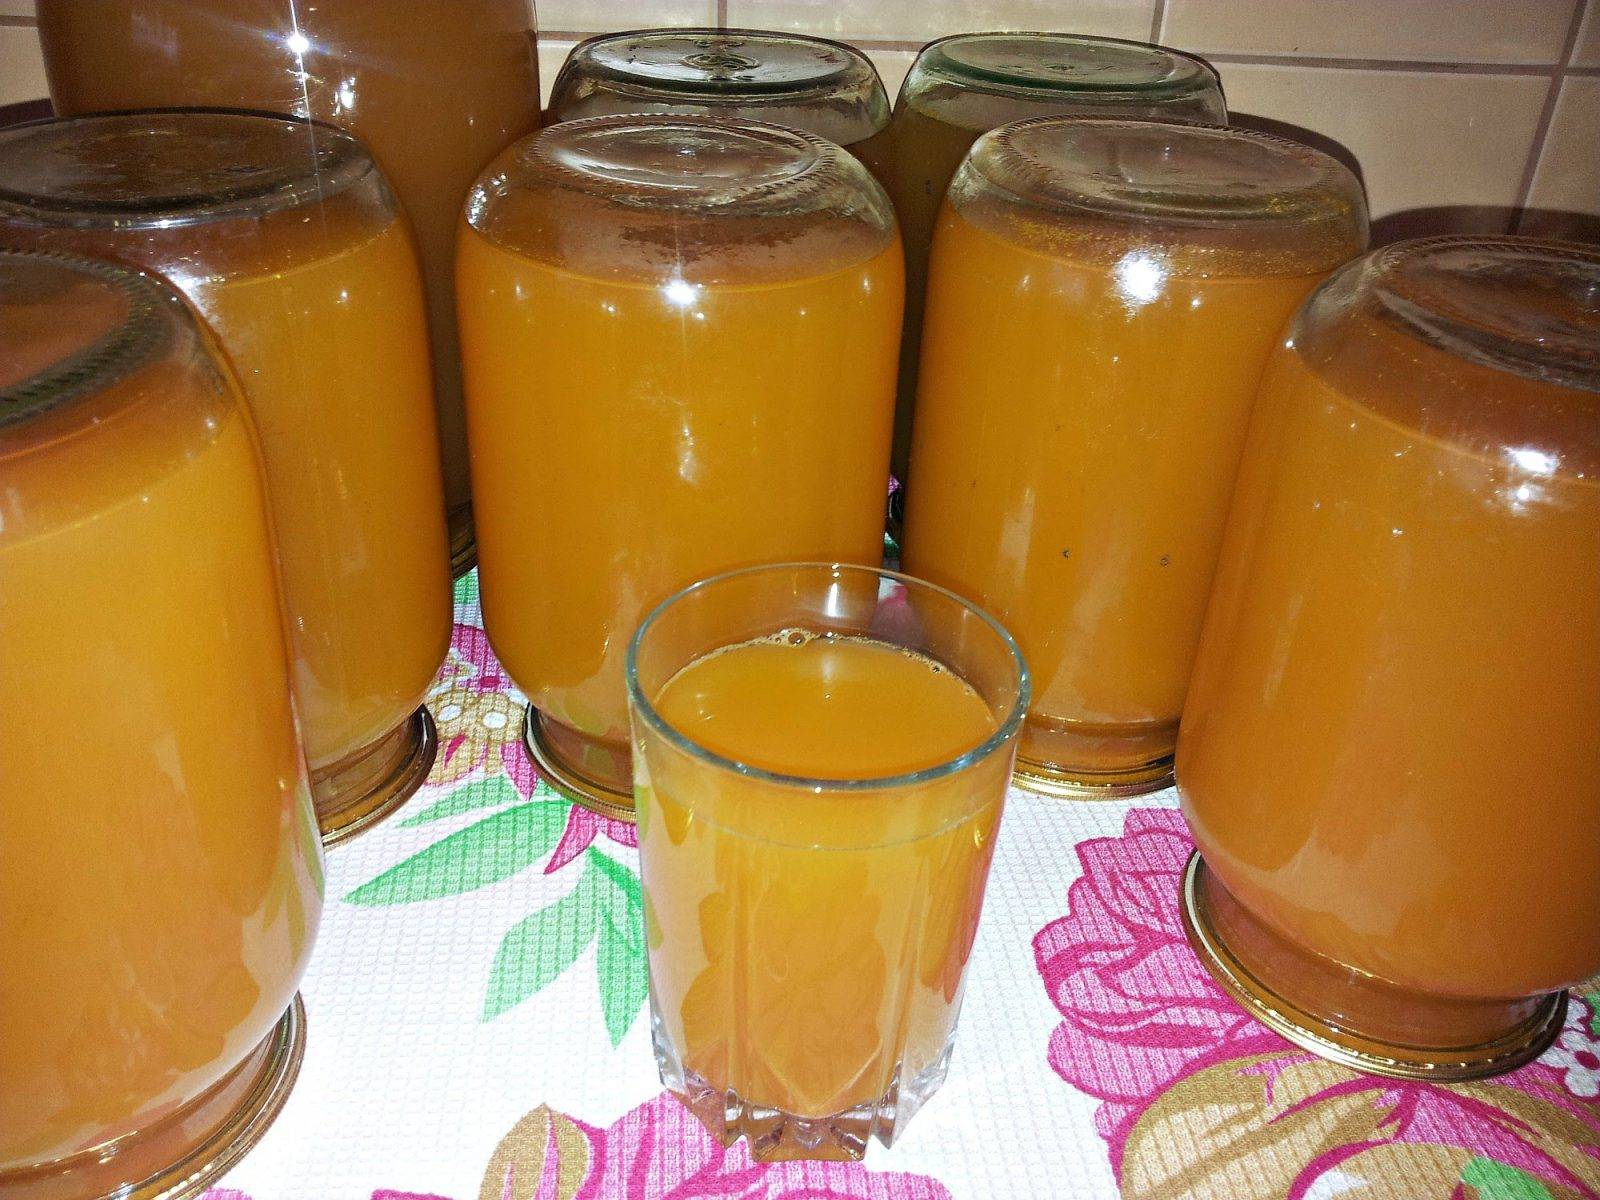 Как заготовить яблочный сок на зиму в домашних условиях, рецепты для соковарки и соковыжималки